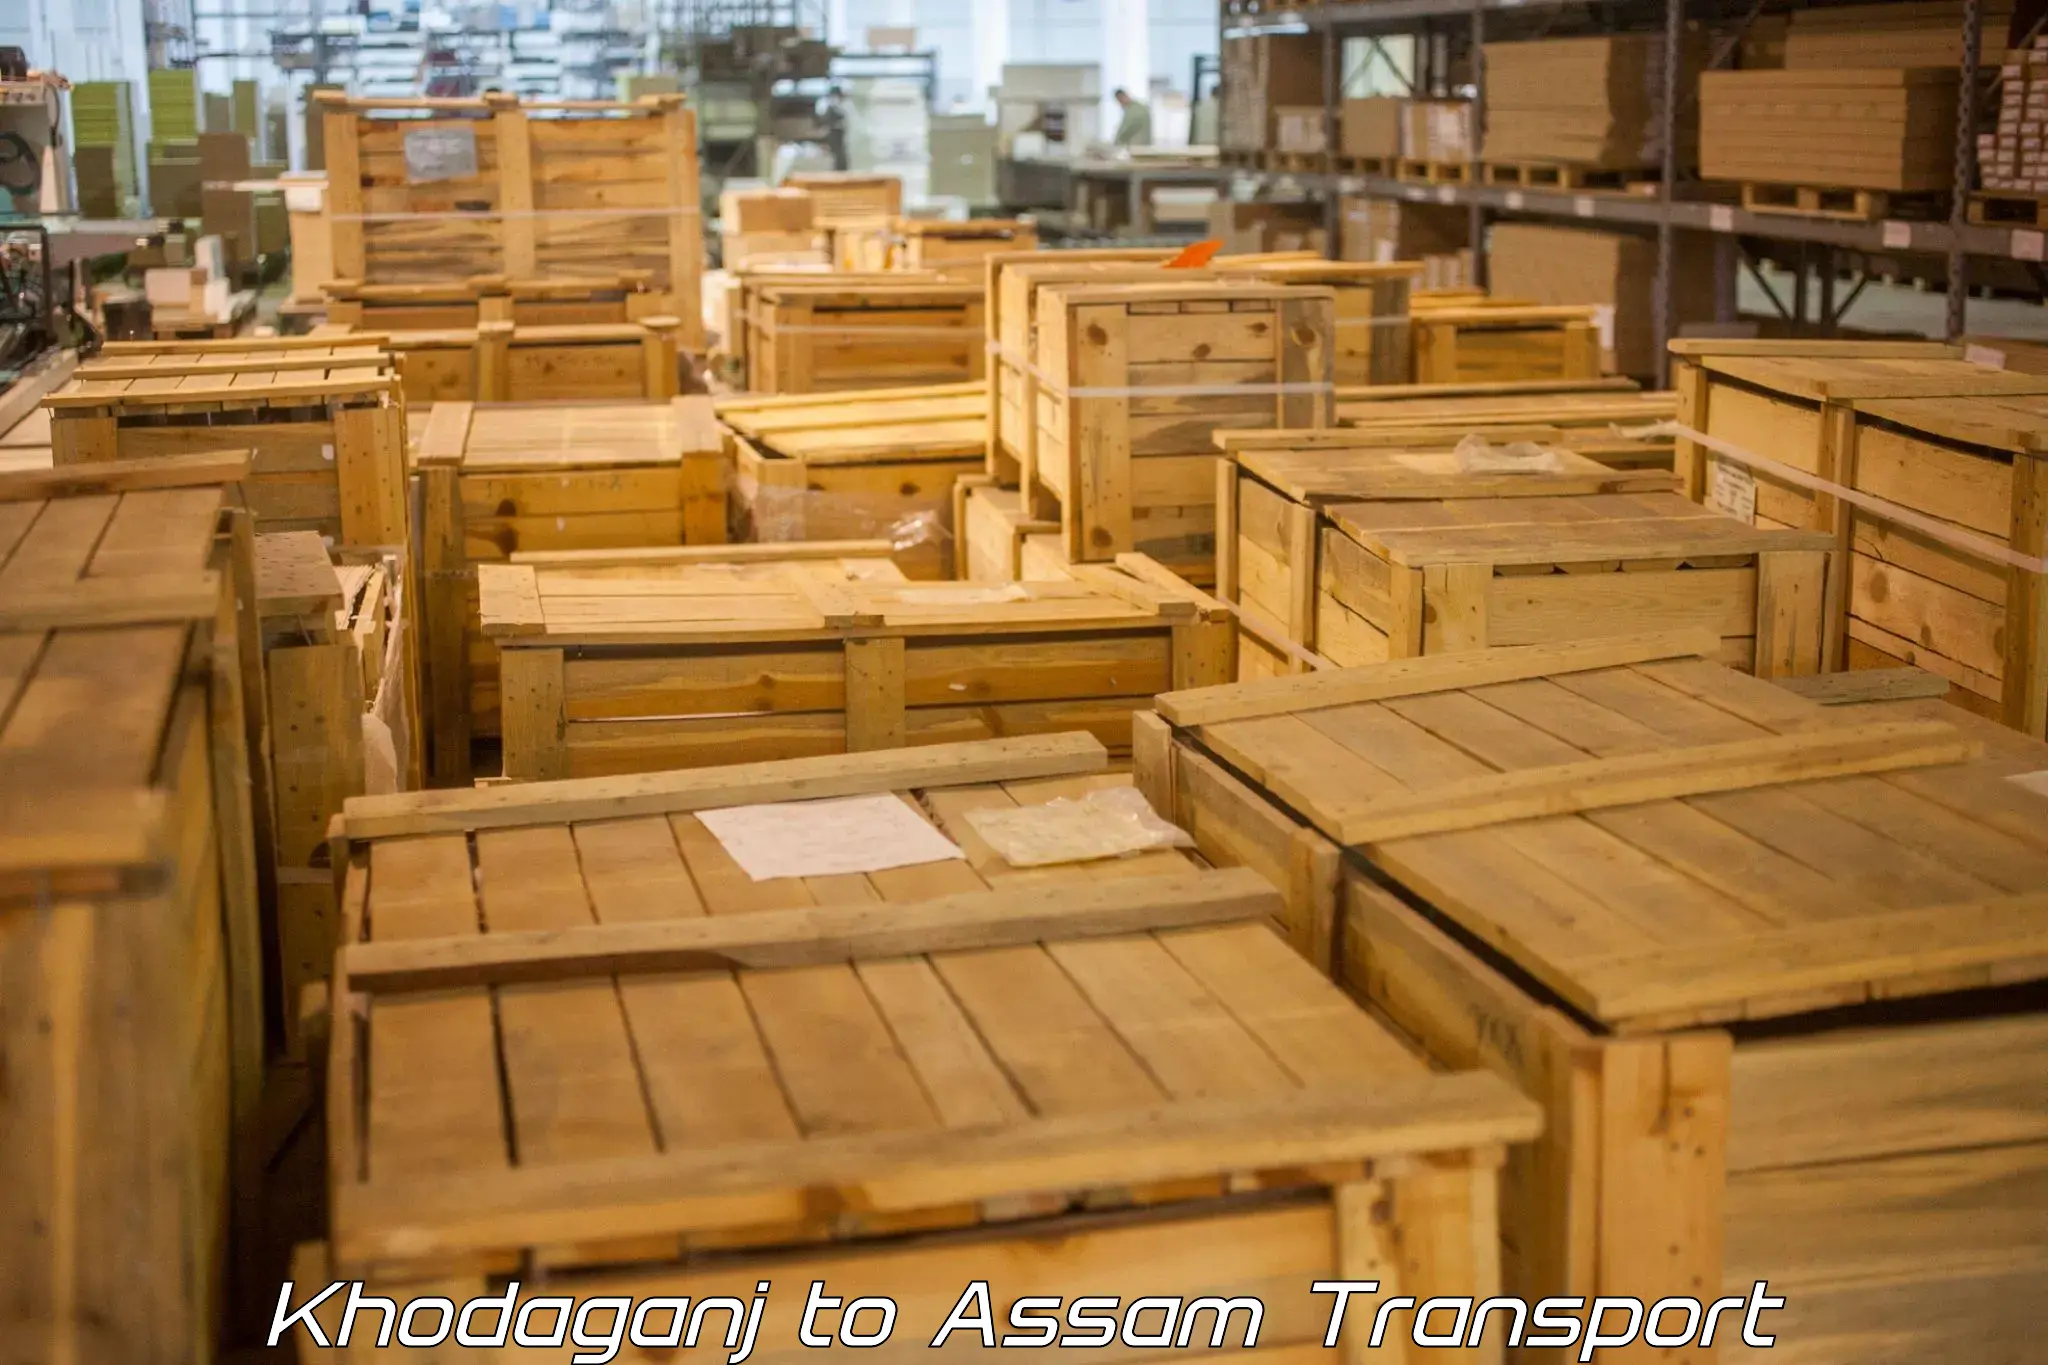 Daily parcel service transport Khodaganj to Assam